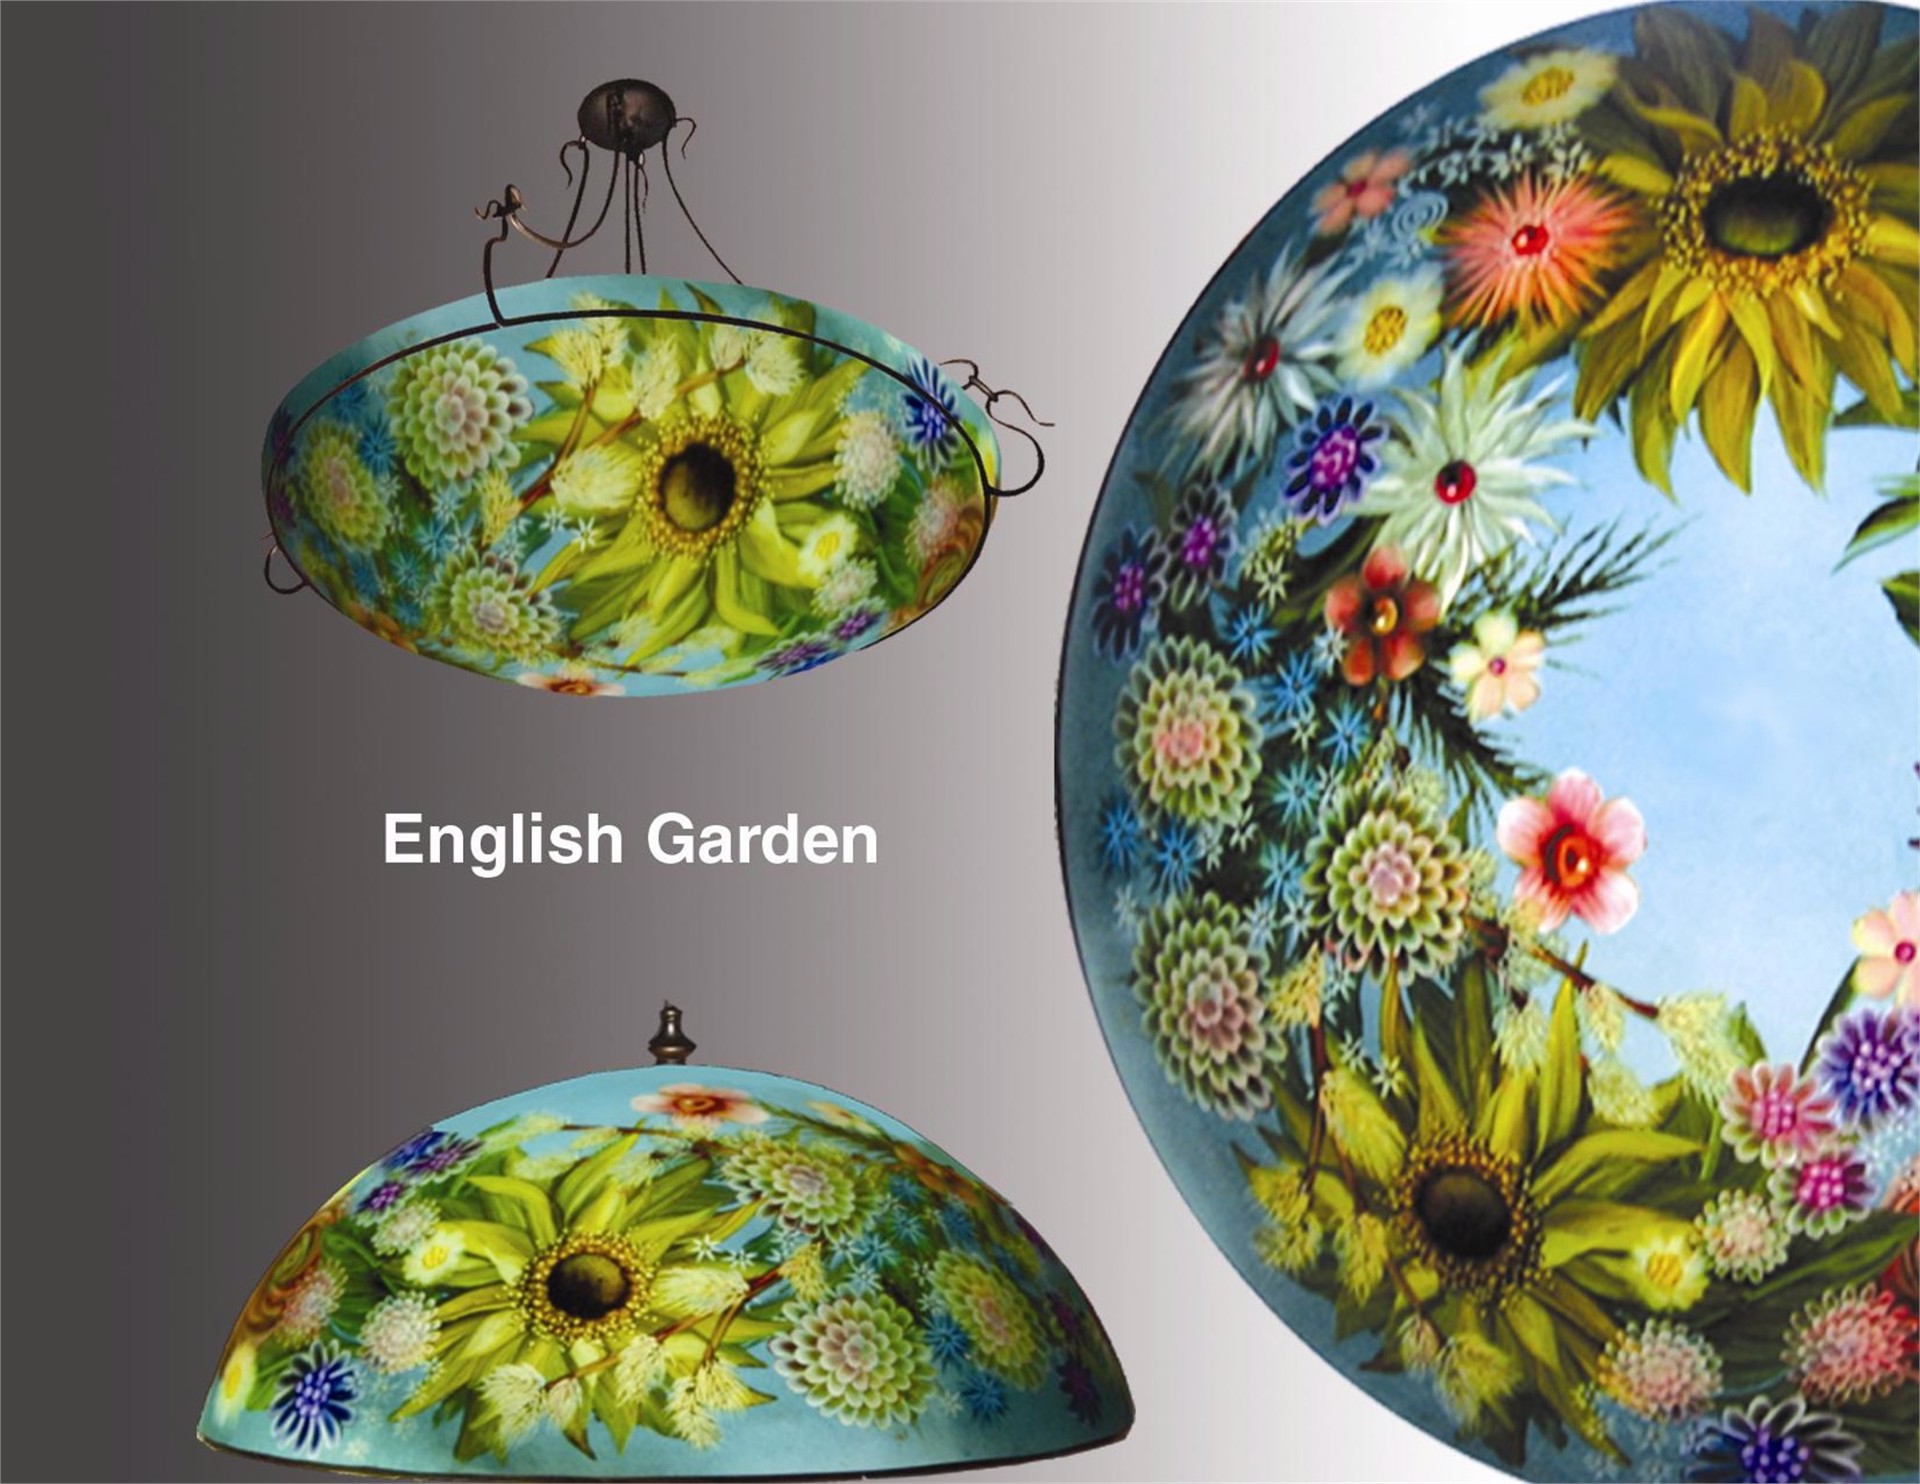 Design English Garden by Jamie Barthel